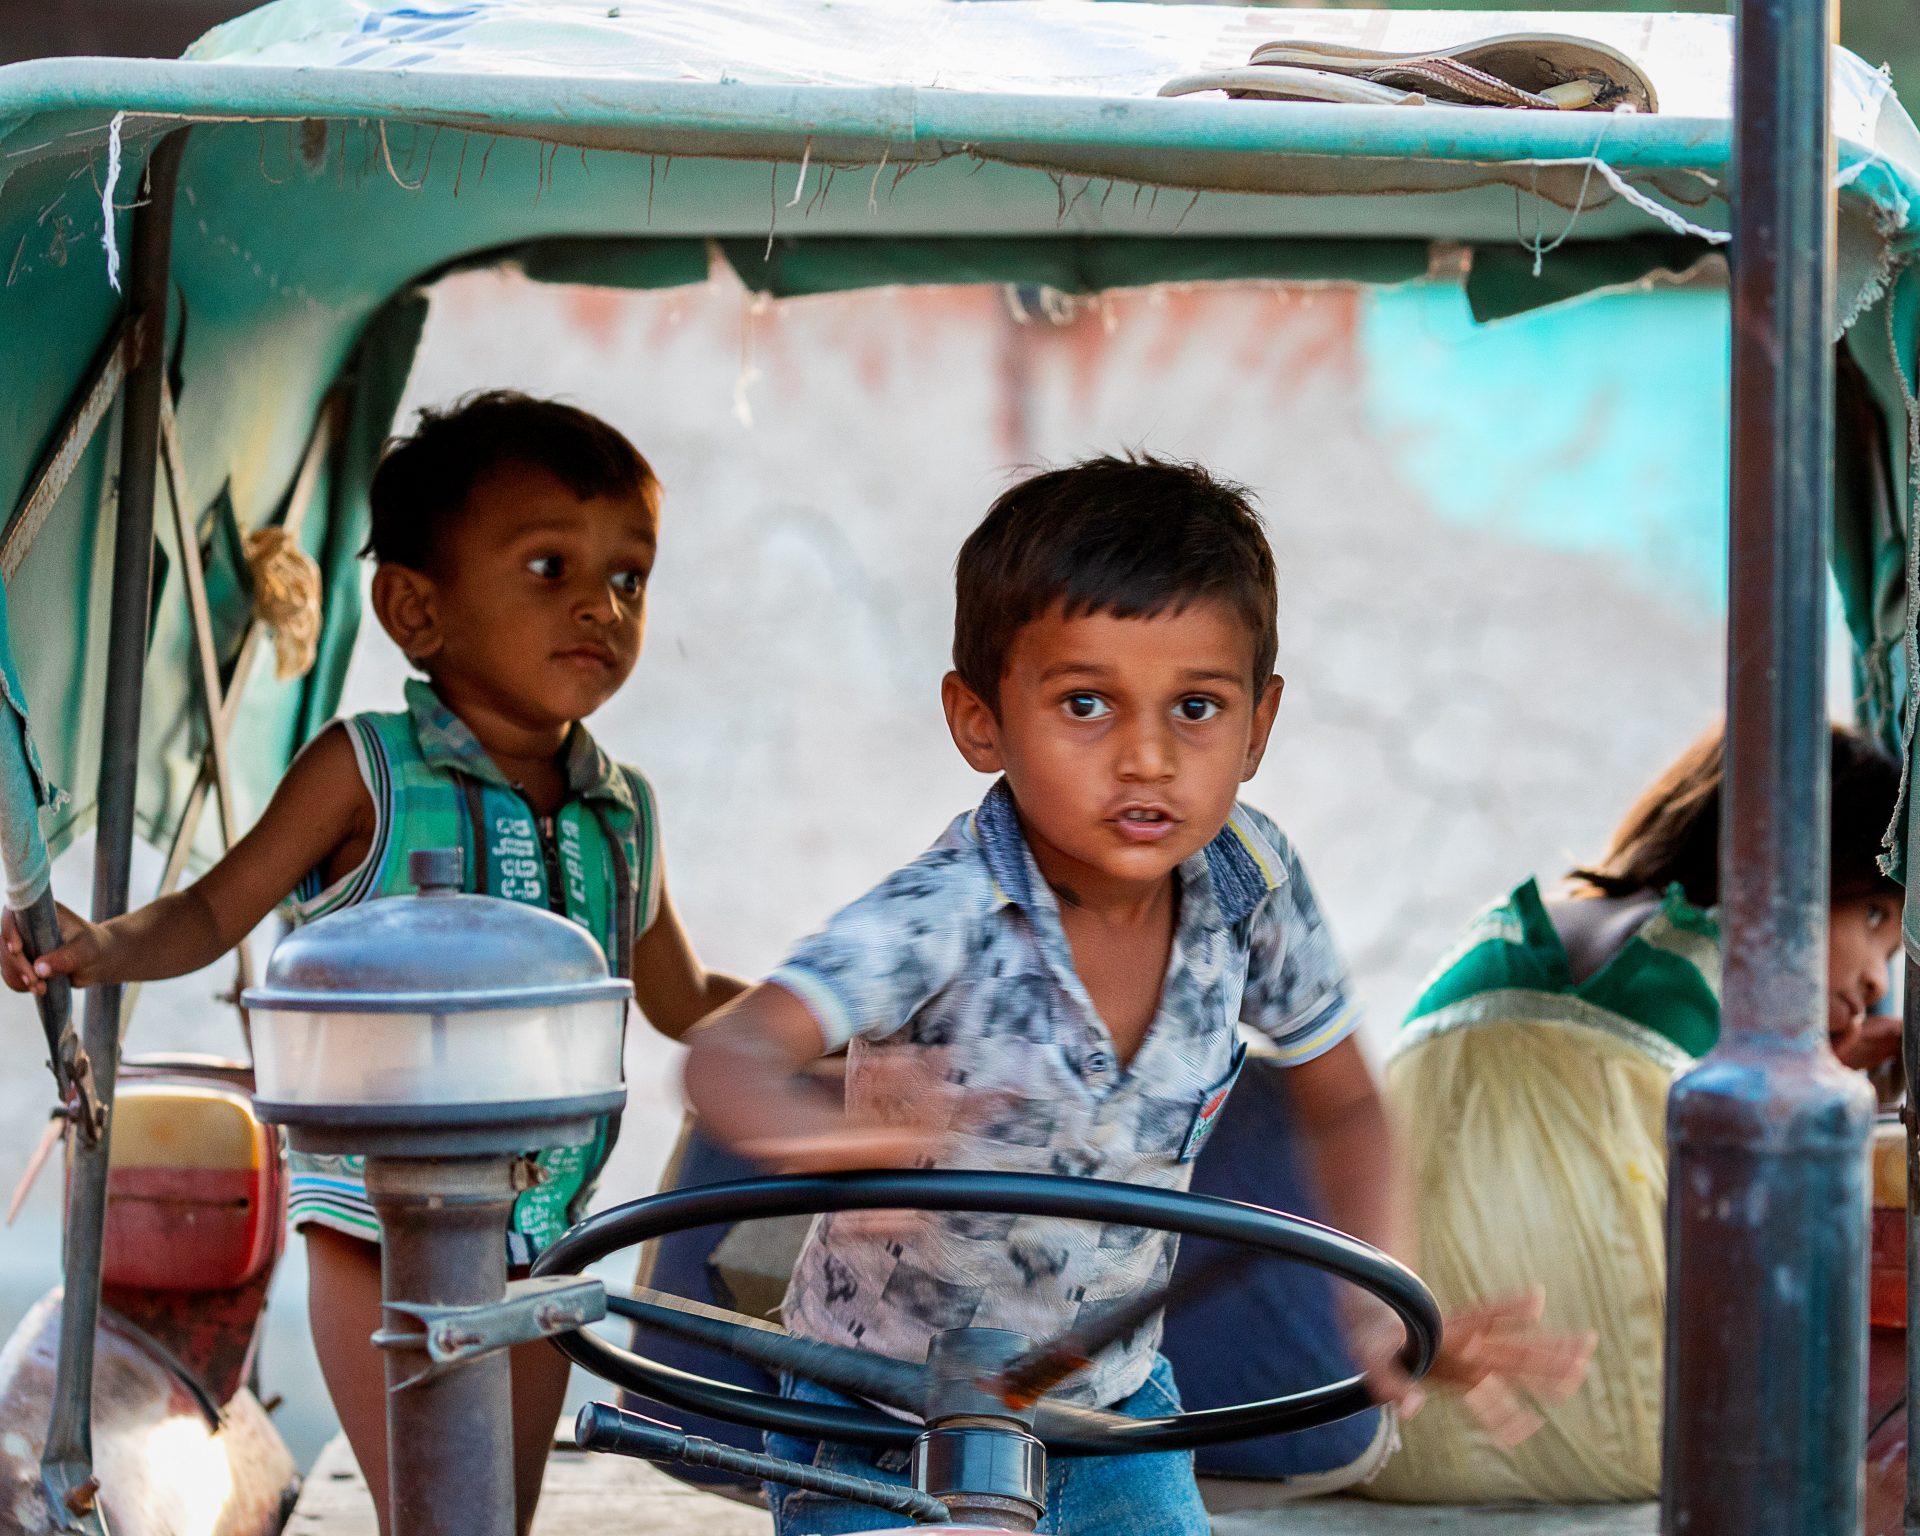 Village Children in Rajasthan